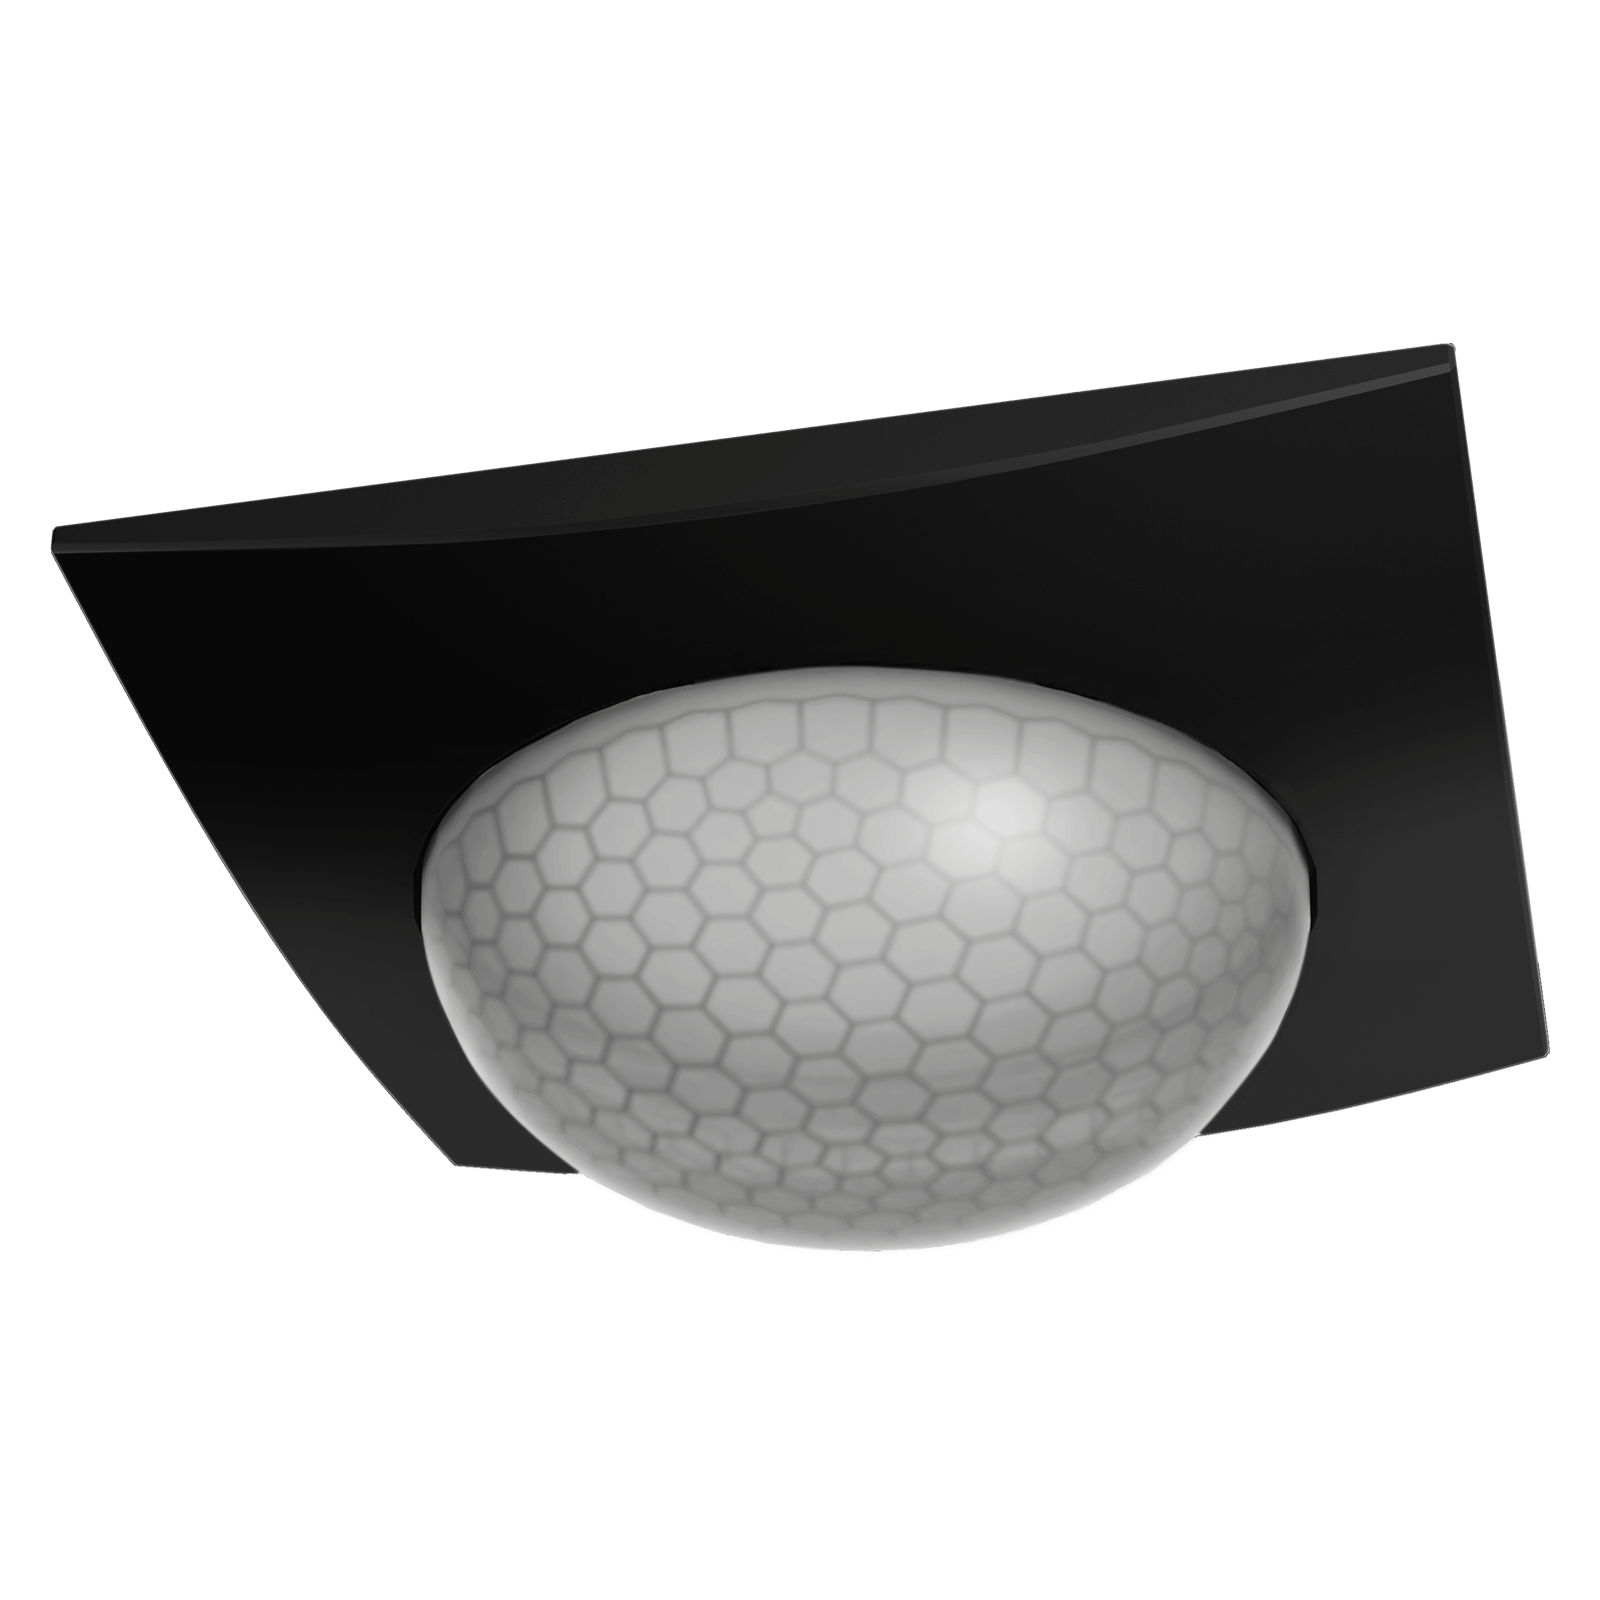 MDT SCN-P360D406.03 KNX Präsenzmelder 360° mit 4 Sensoren, Schwarz matt